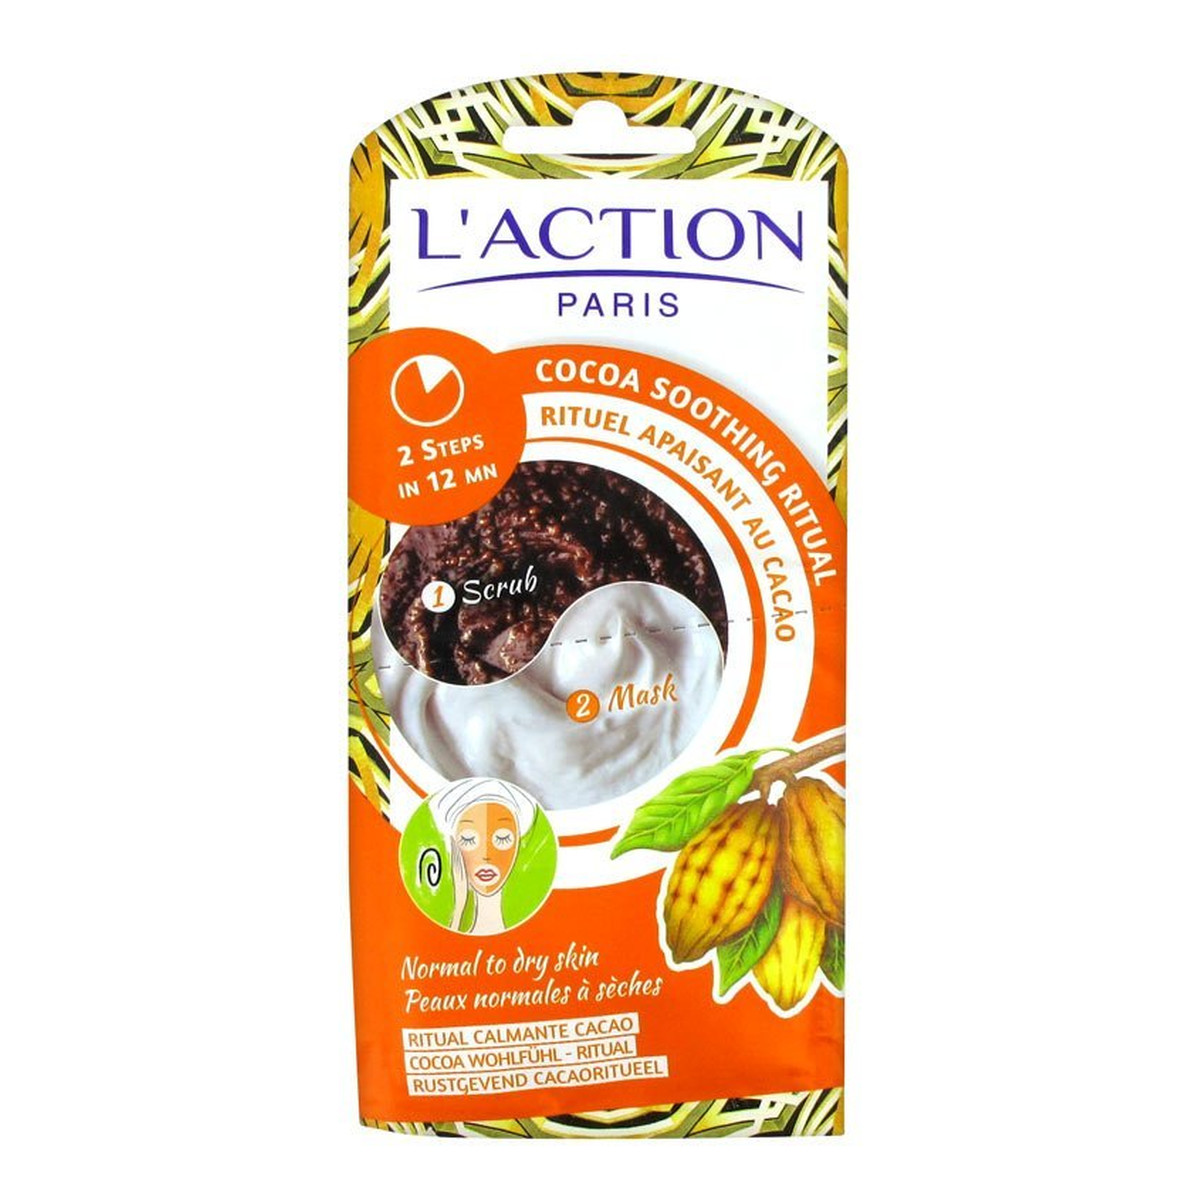 L'action Cocoa Soothing Ritual kojąca przeciwstarzeniowa maseczka 7g + kojący peeling 8g